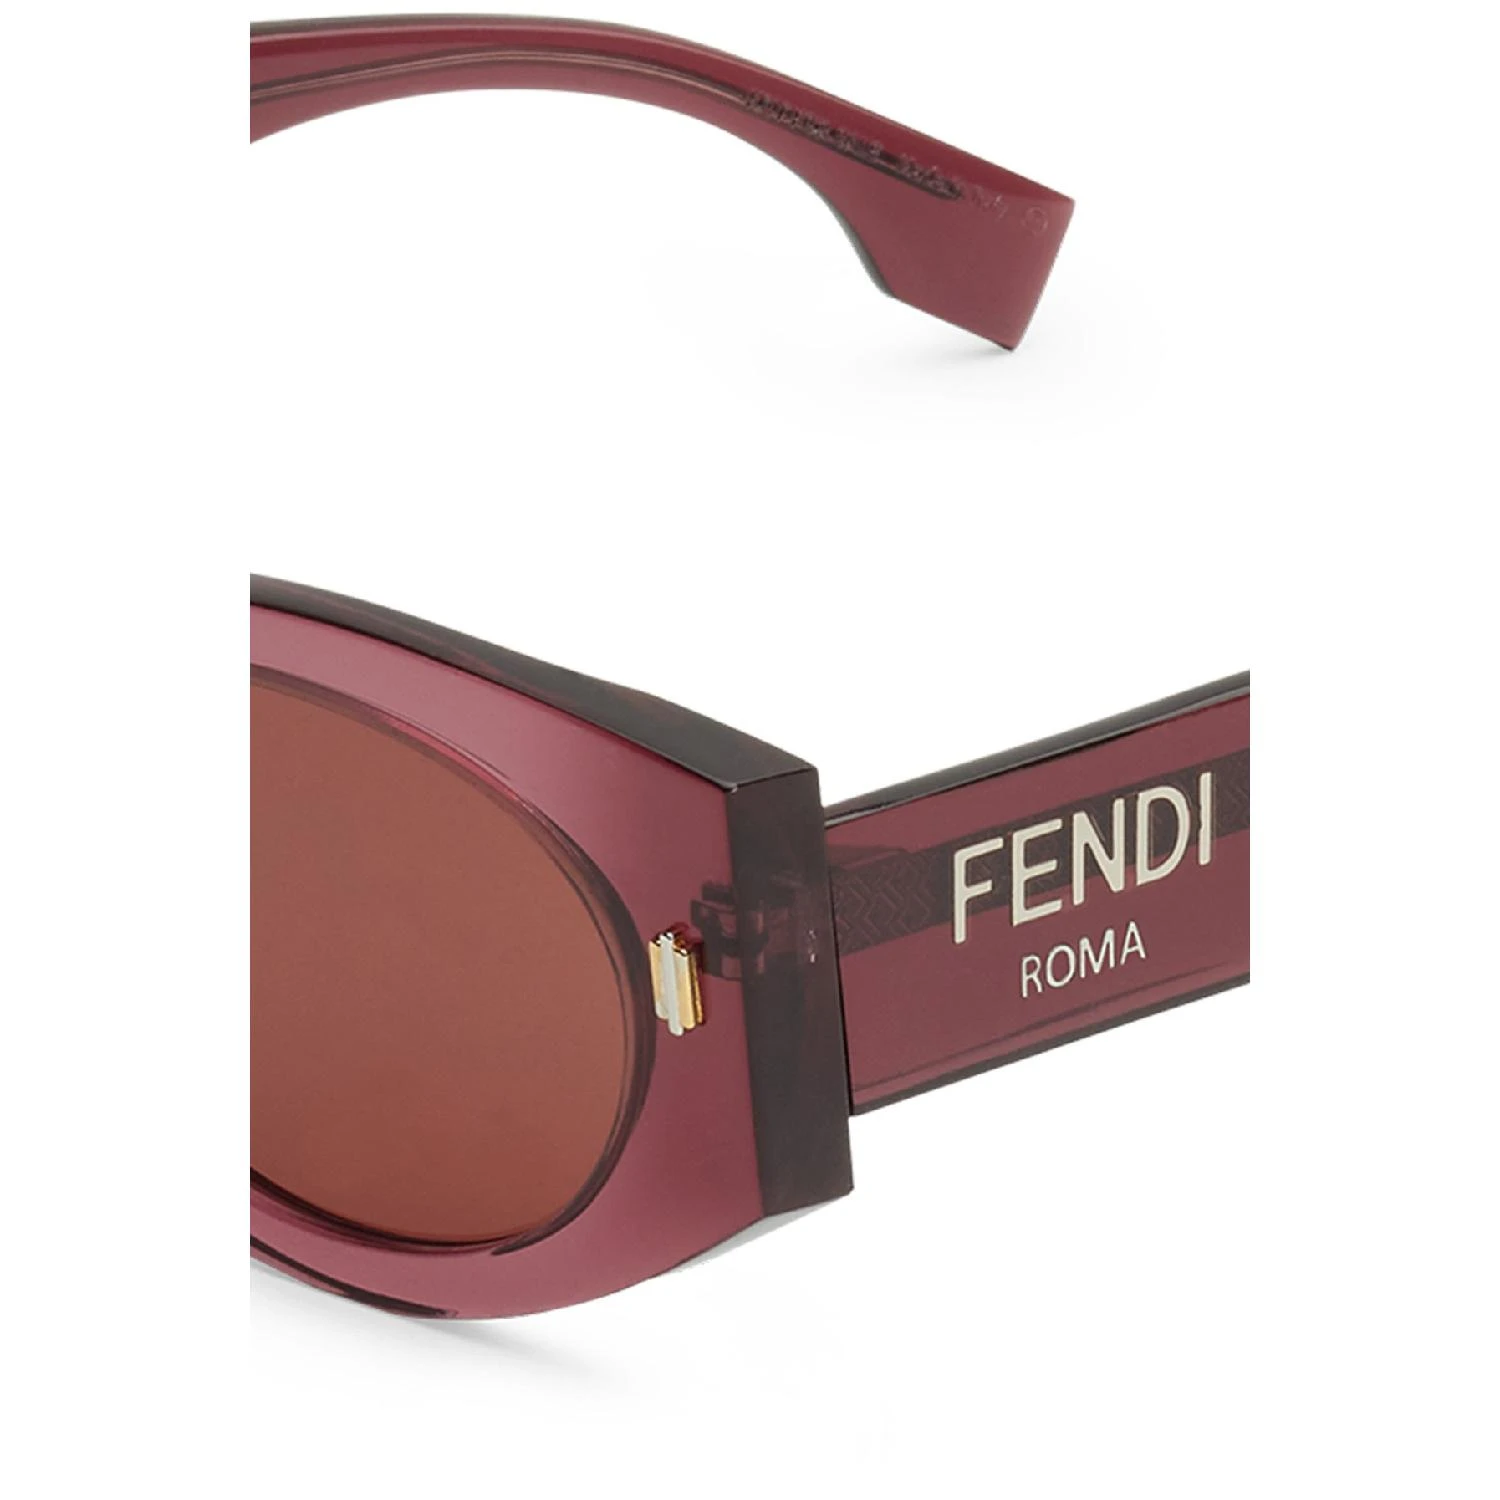 【特惠8.7折】包邮包税【预售7天发货】 FENDI芬迪 女士 太阳眼镜 FENDI Roma 眼镜  FEN77E9JPUR 商品